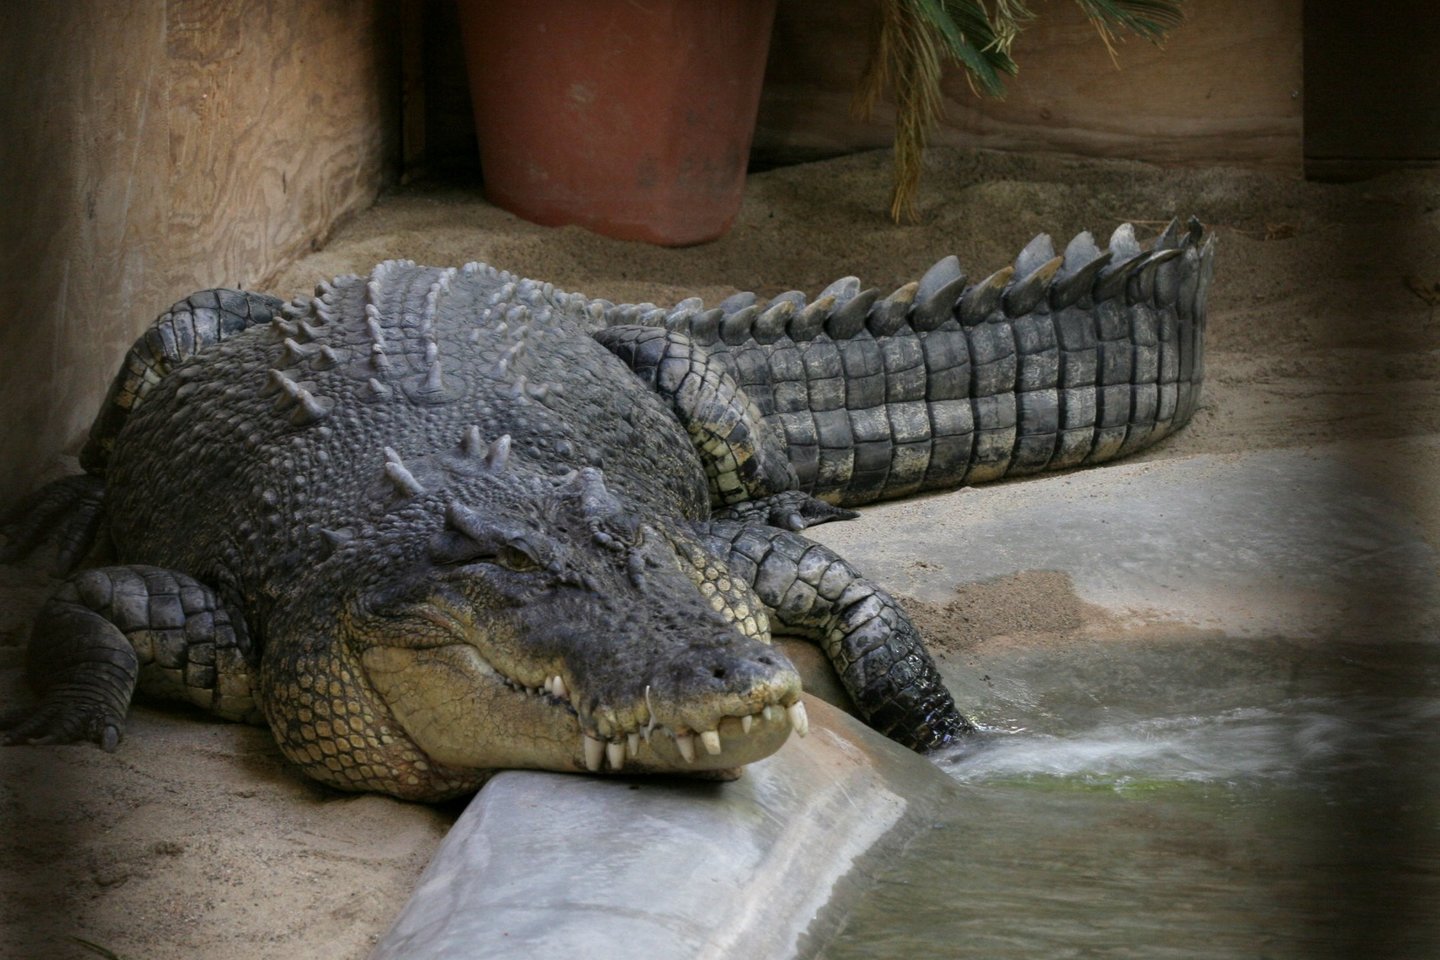  Indonezijoje žmonės papjovė 300 krokodilų.<br> Wikipedia nuotr.